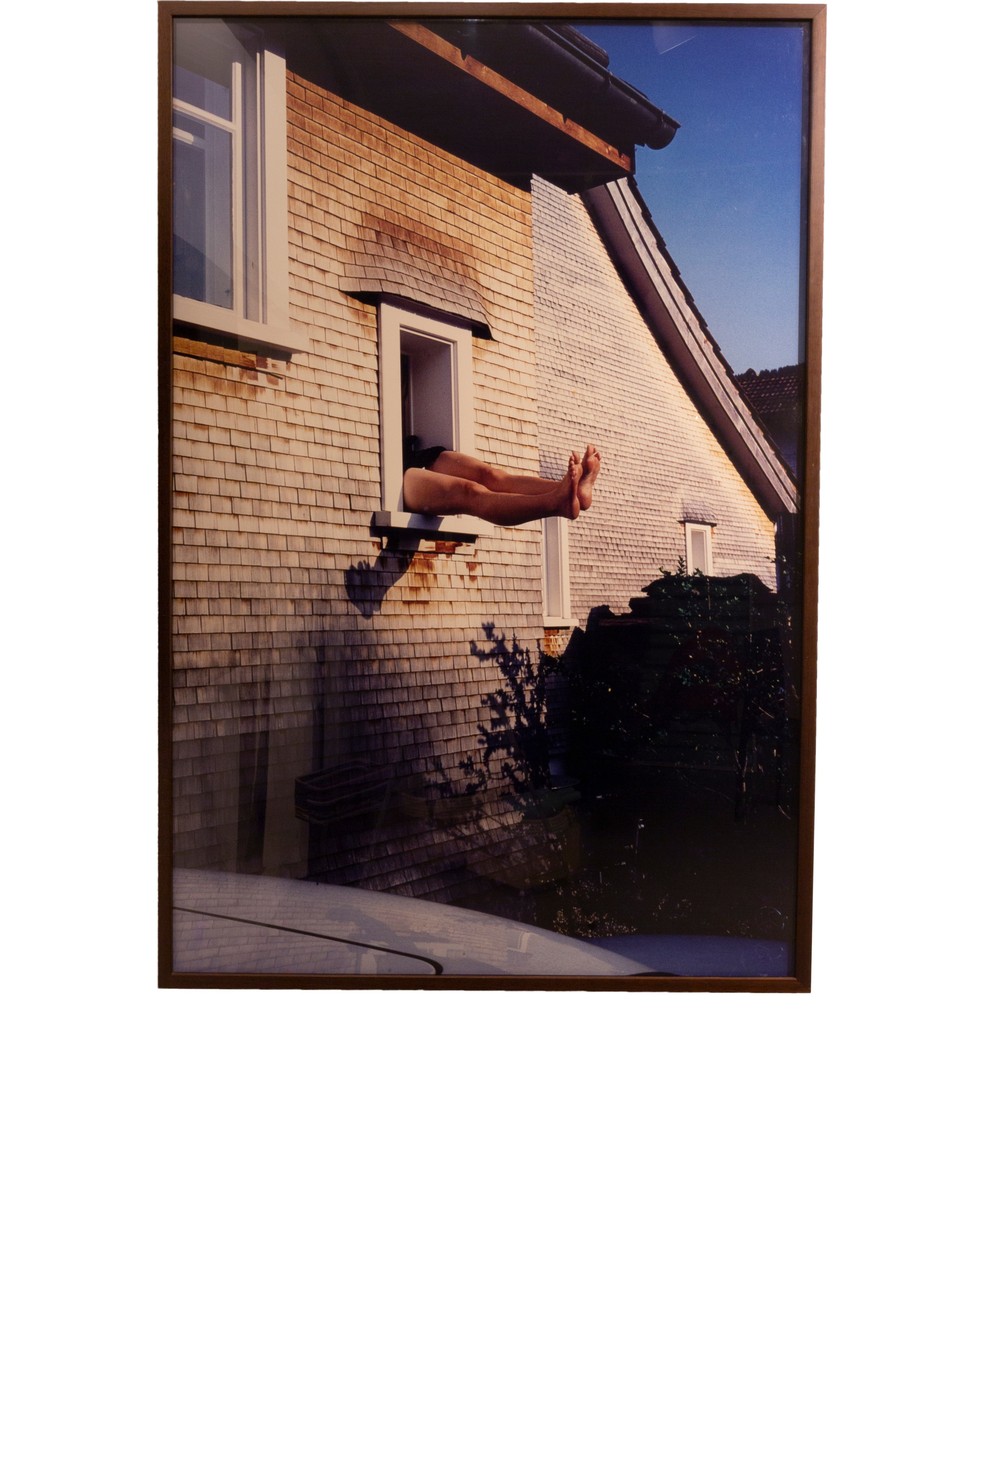 Obra Sem título (Woman Legs Out Window), de Erwin Wurm, de 1998, faz parte da coleção de Fábio — Foto: Fabio Souza/Divulgação